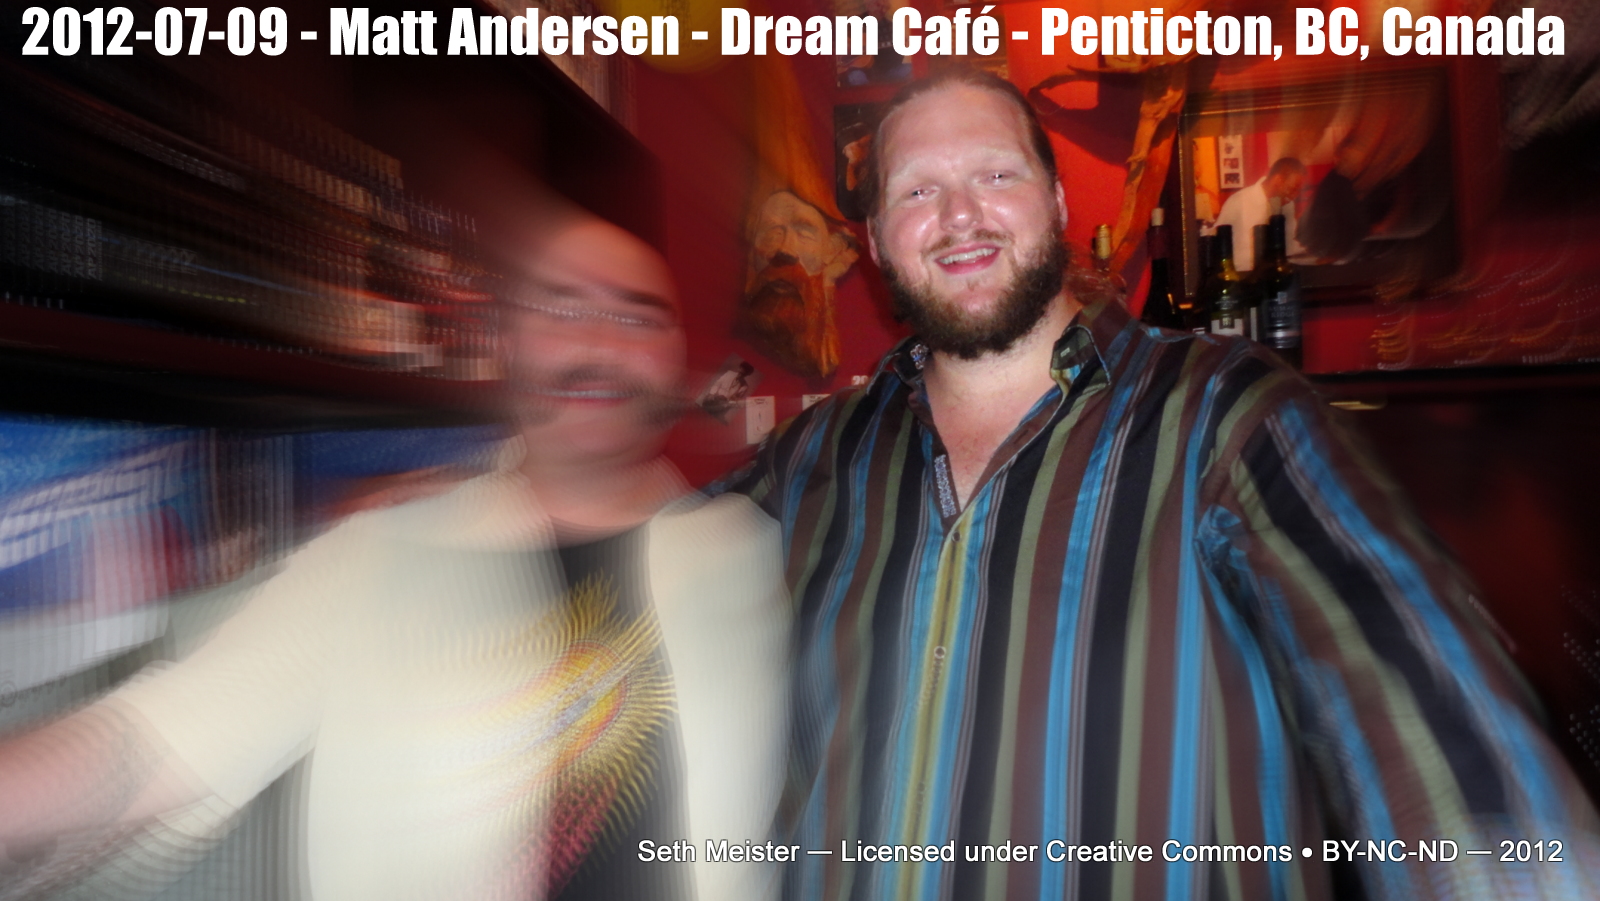 MattAndersen2012-07-09DreamCafePentictonCanada.jpg